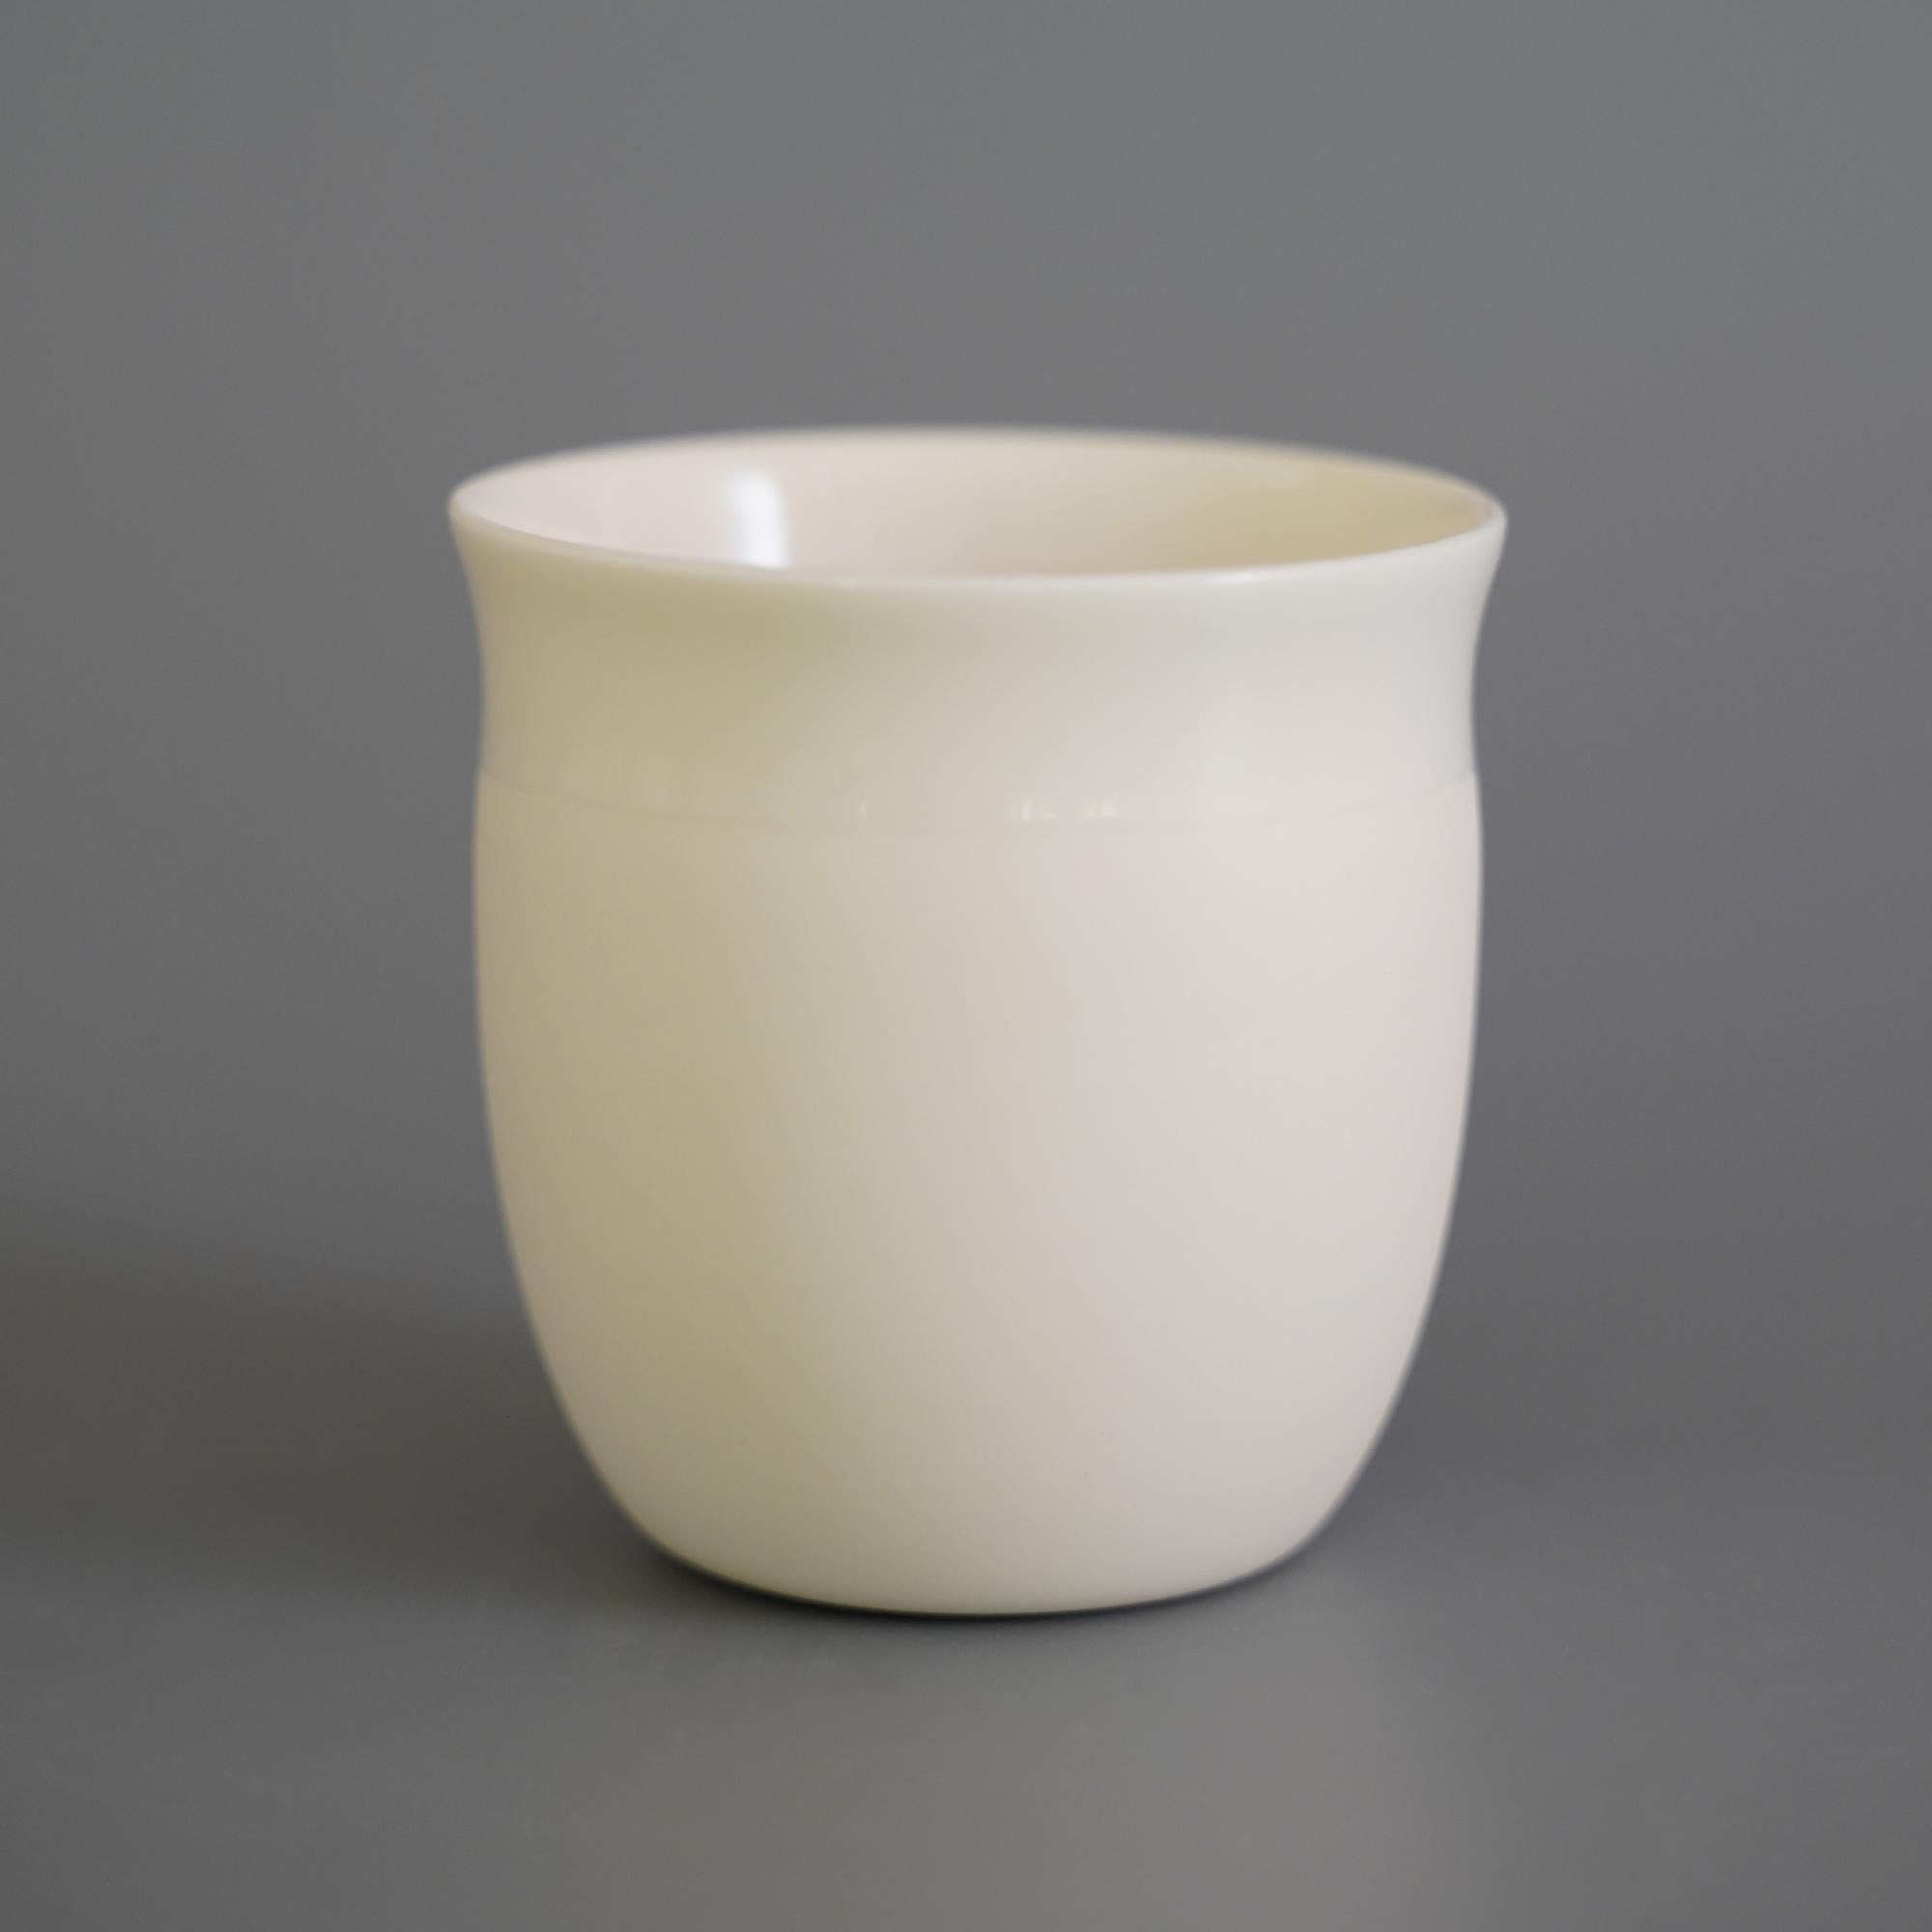 4er Set einfarbiger Kurvenbecher von Studio Cúze
Abmessungen: B 7 x H 6,5 cm
MATERIALIEN: Keramik

Die Tasse Plain Curve ist ein flacher, hochwertiger Becher von Yasuhiro Cúze. Ganz in Weiß gehalten, bietet die Tasse eine Babyhaut-Oberfläche, die